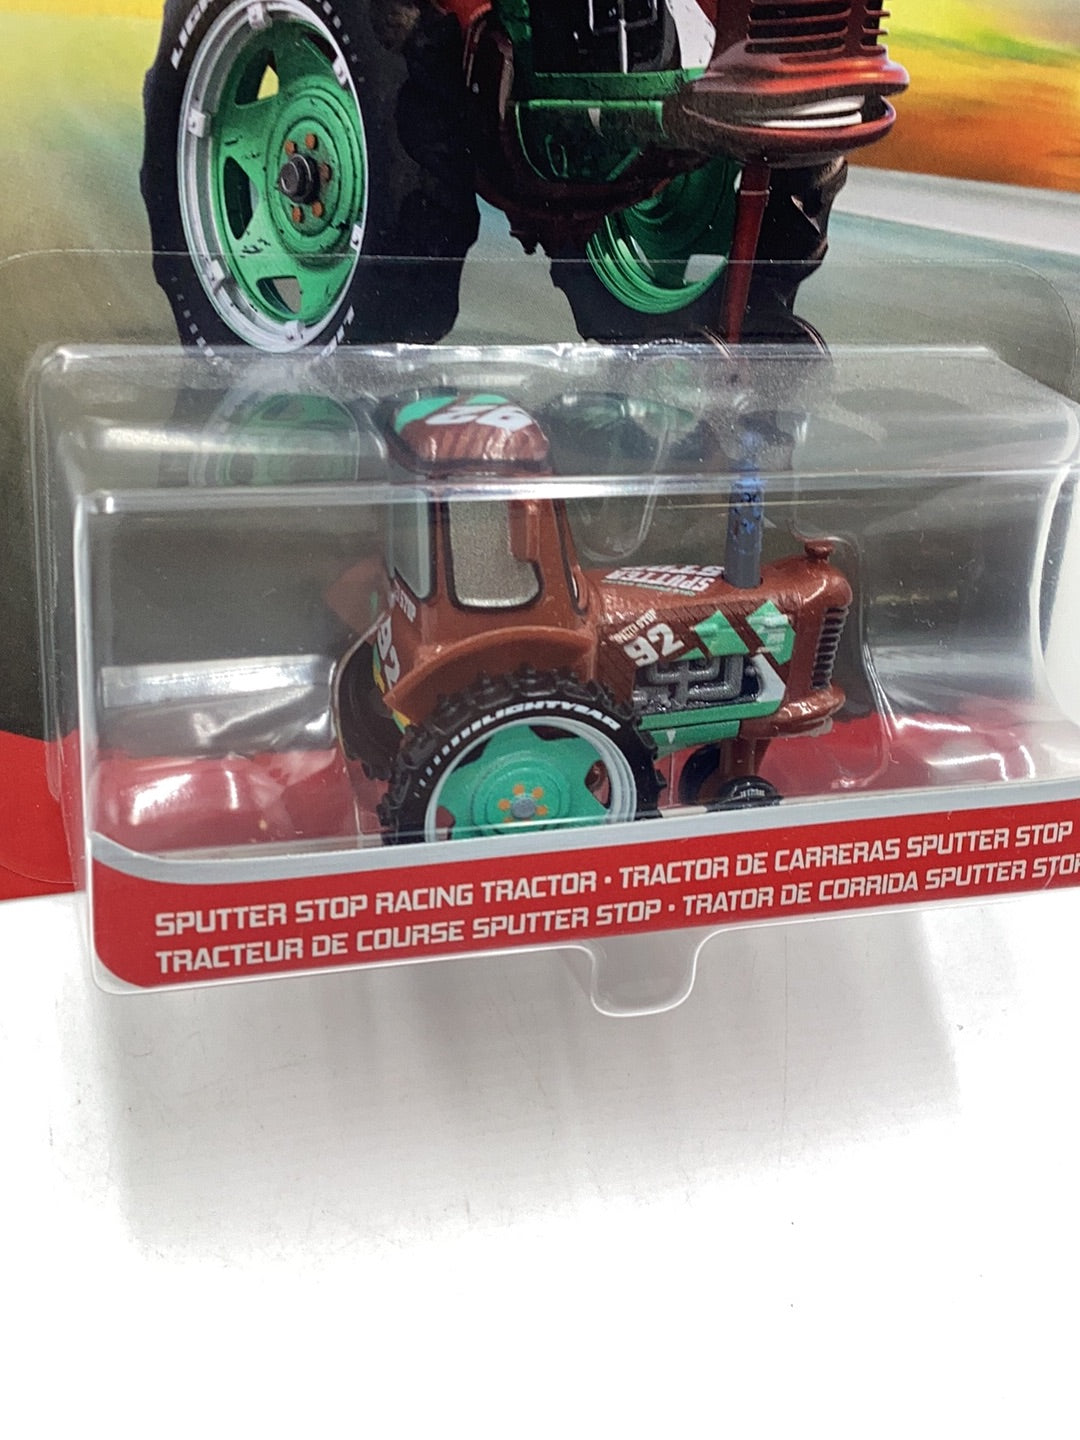 Disney Pixar Cars Splitter Stop Racing Tractor